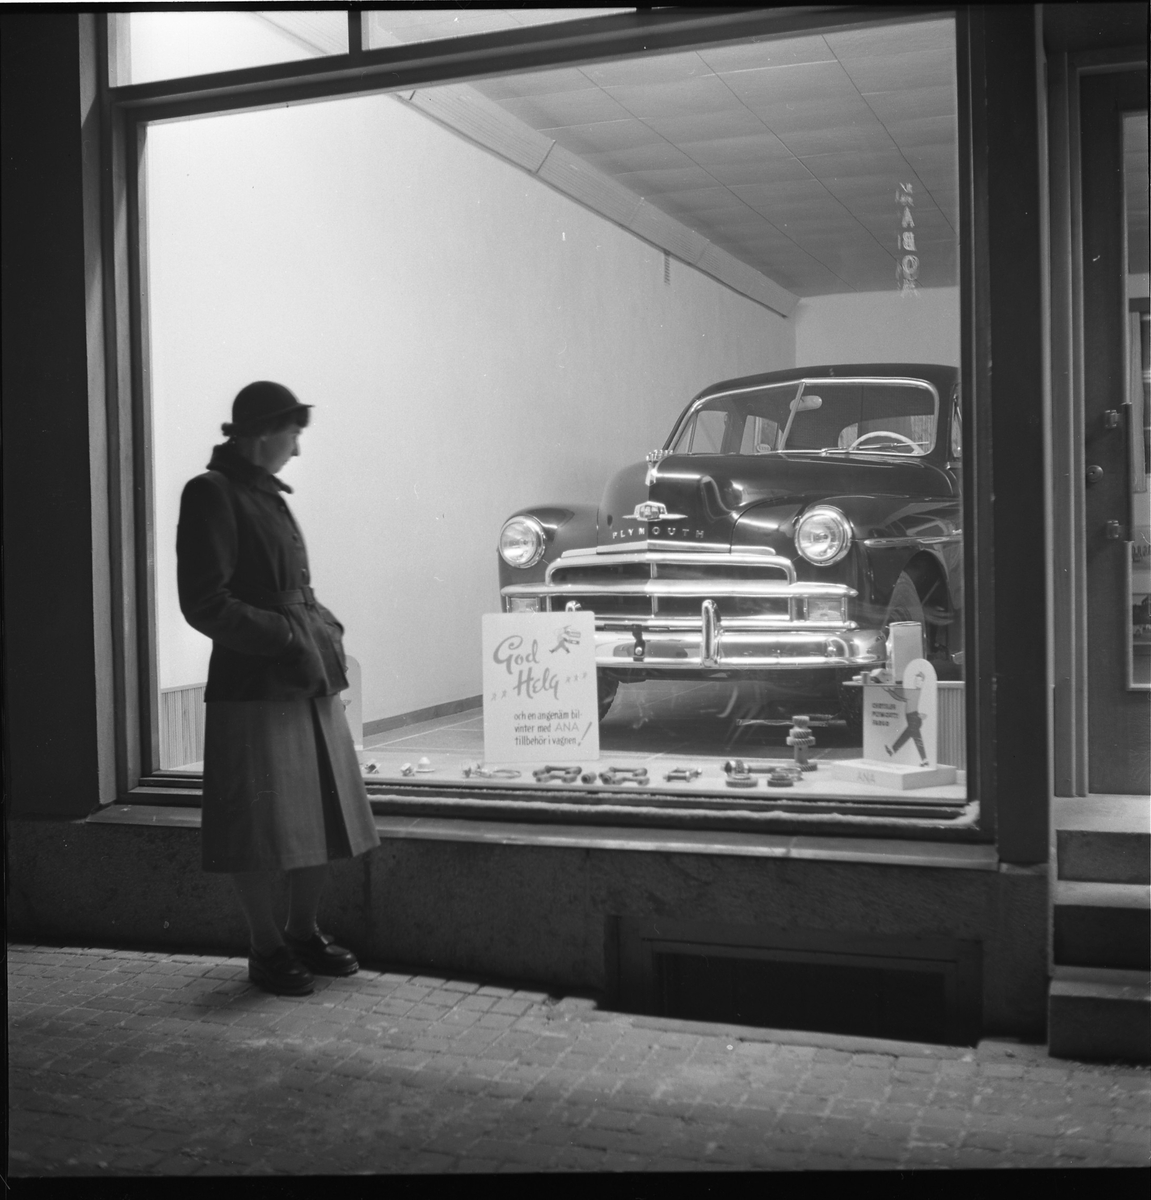 Skyltfönster tillhörande ATO motor på Östra Kyrkogatan, kv Gustaf, dec 1950